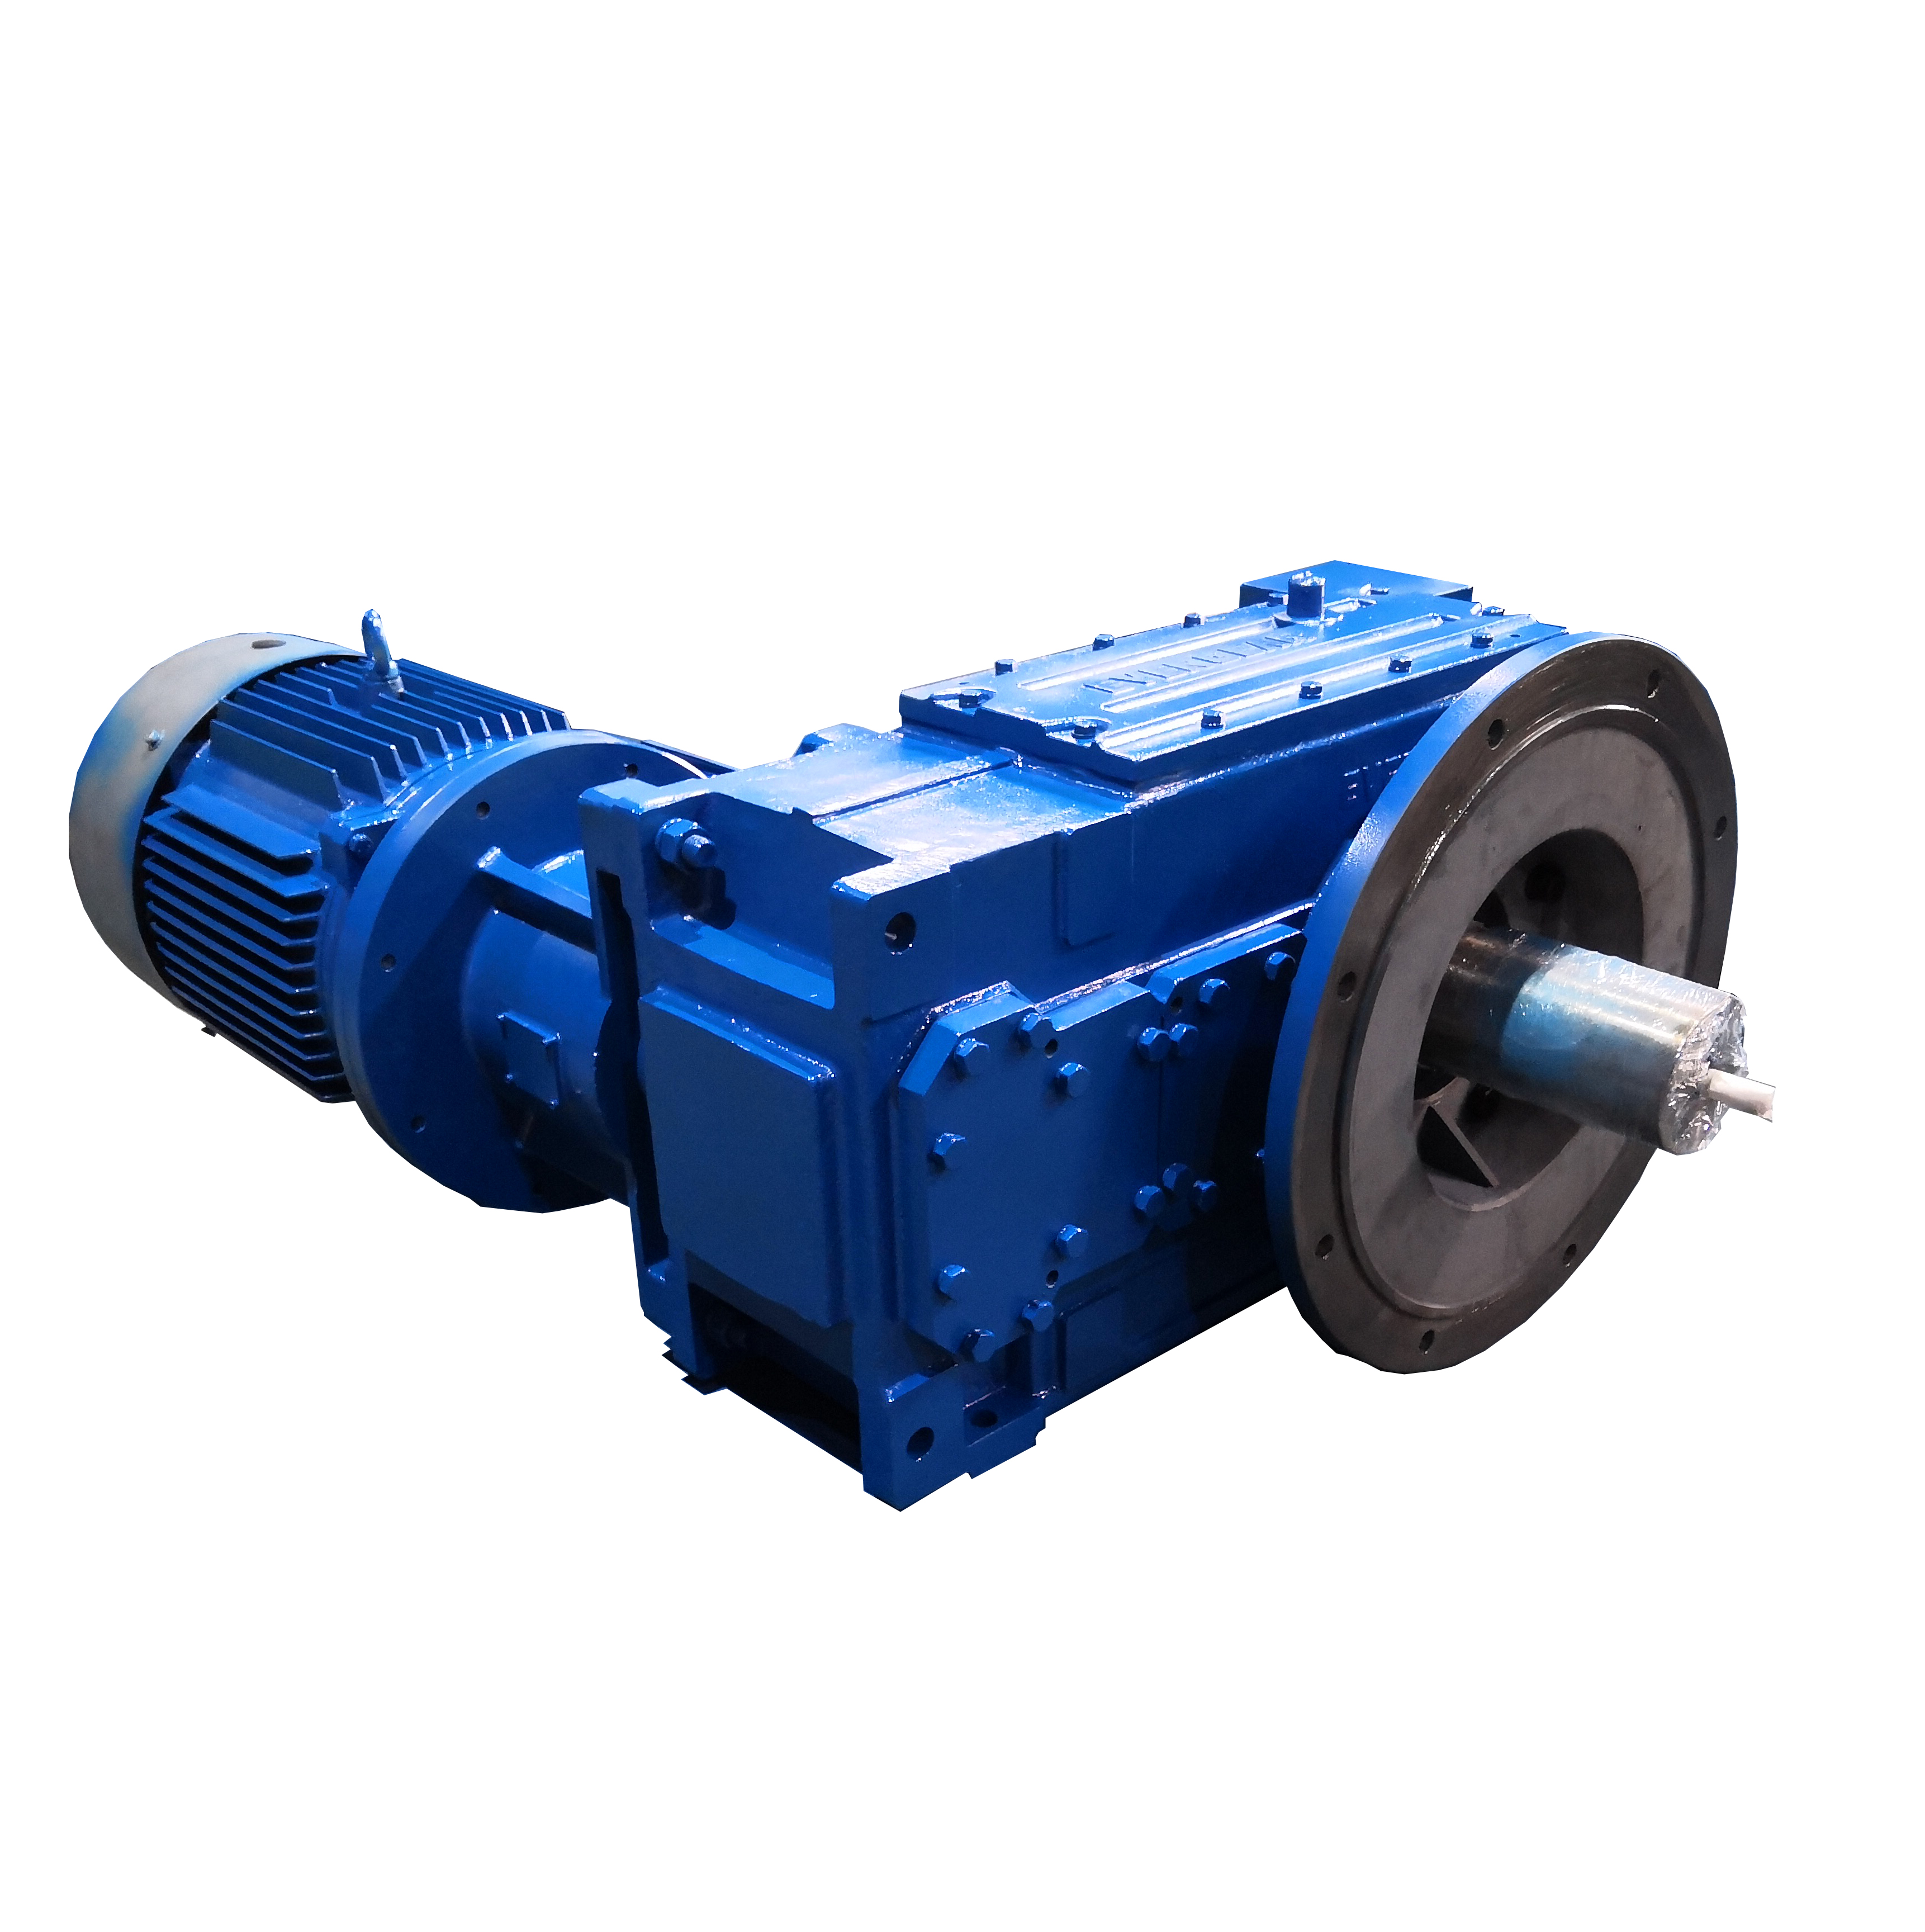 Industriegetriebe/Untersetzungsgetriebe der EVERGEAR H/B-Serie für Recyclingförderer